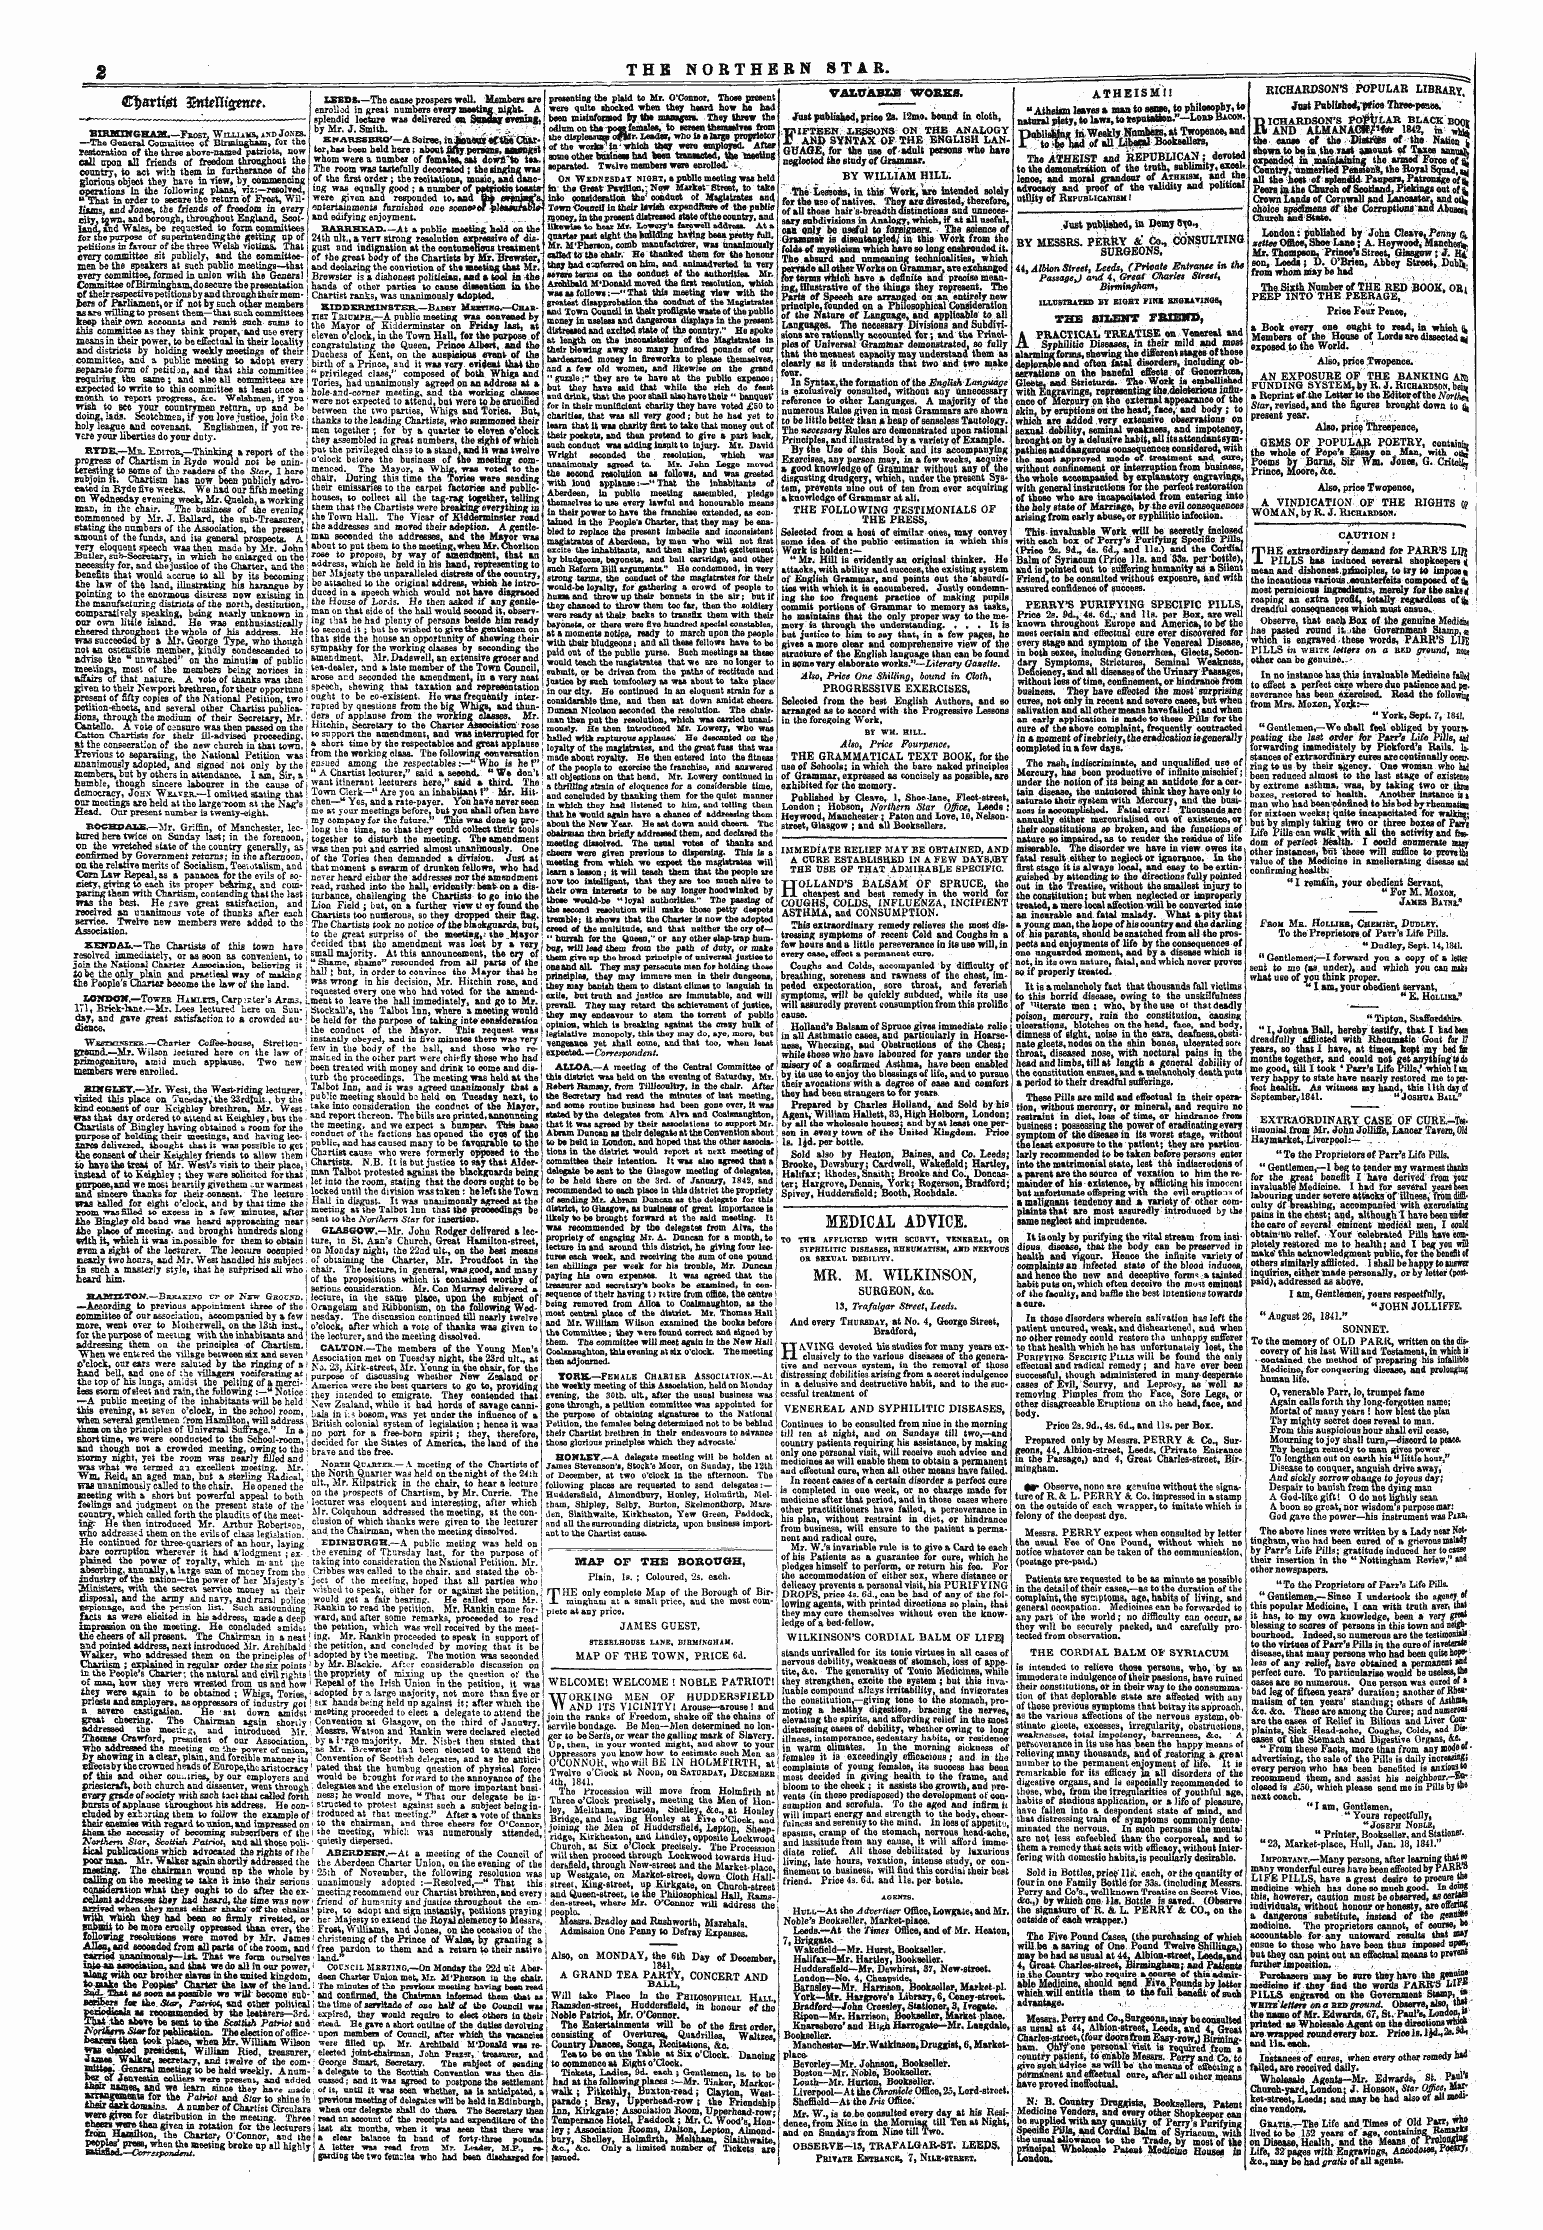 Northern Star (1837-1852): jS F Y, 2nd edition - Cparttgi $Nutti&Wt.